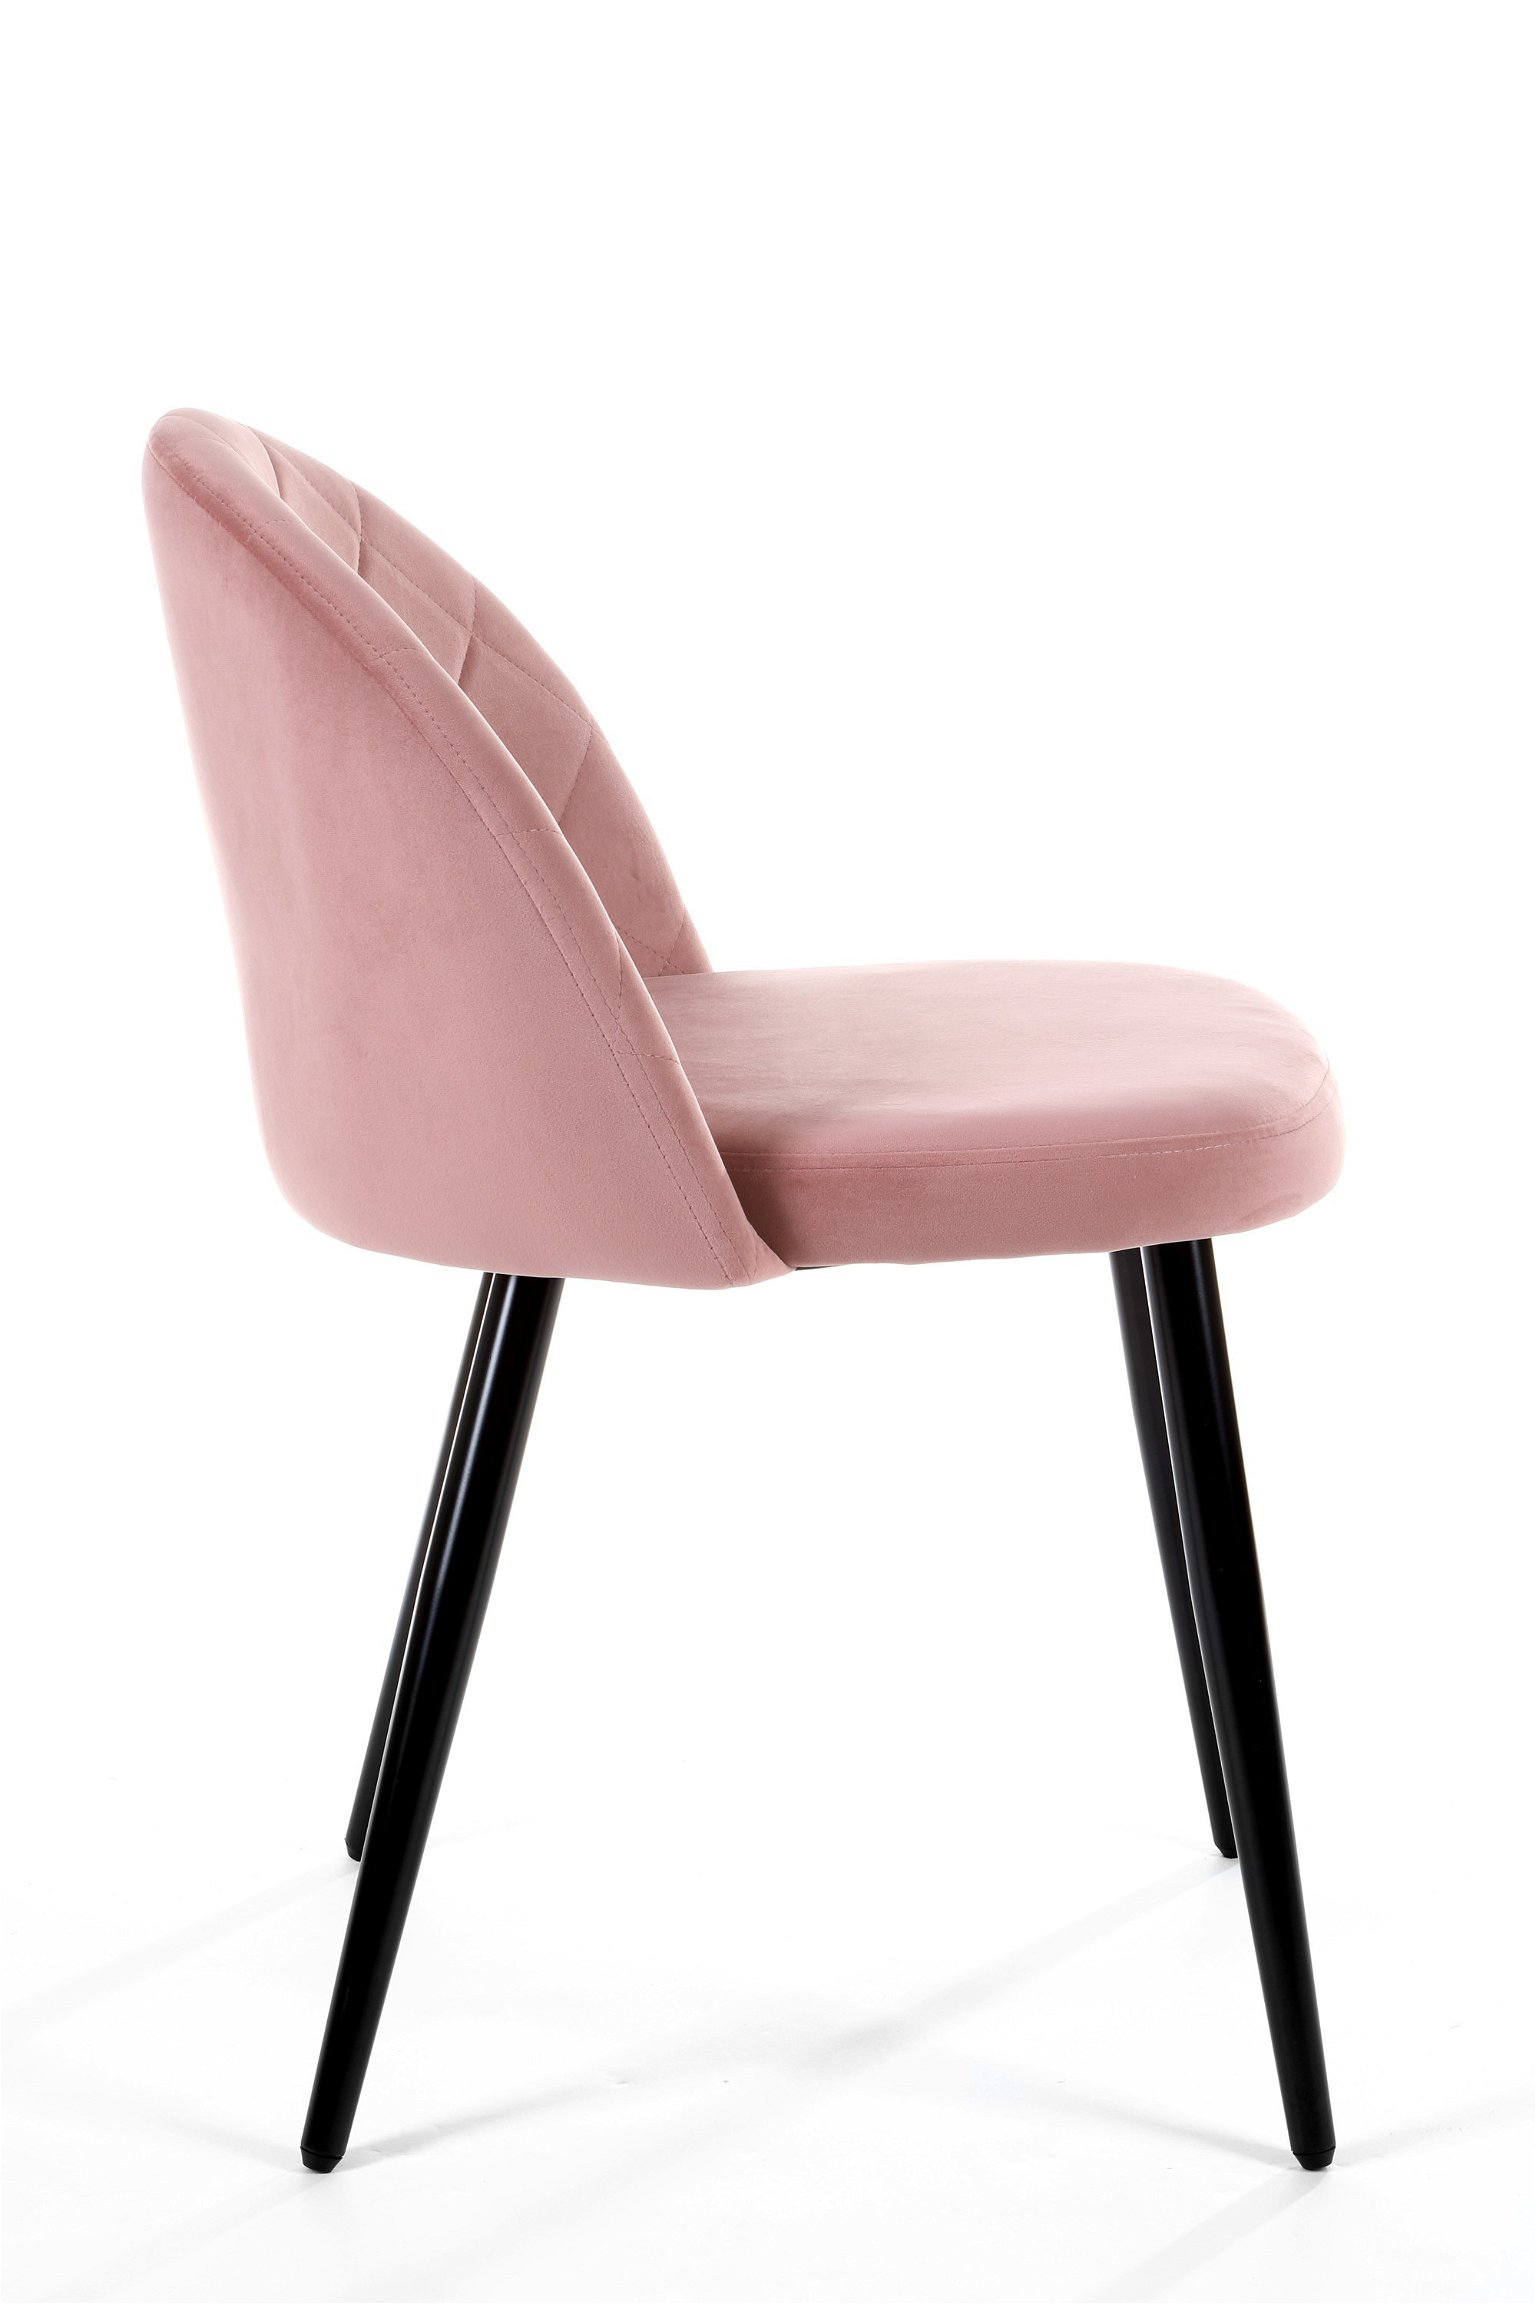 4-ių kėdžių komplektas SJ.077, rožinė - 4